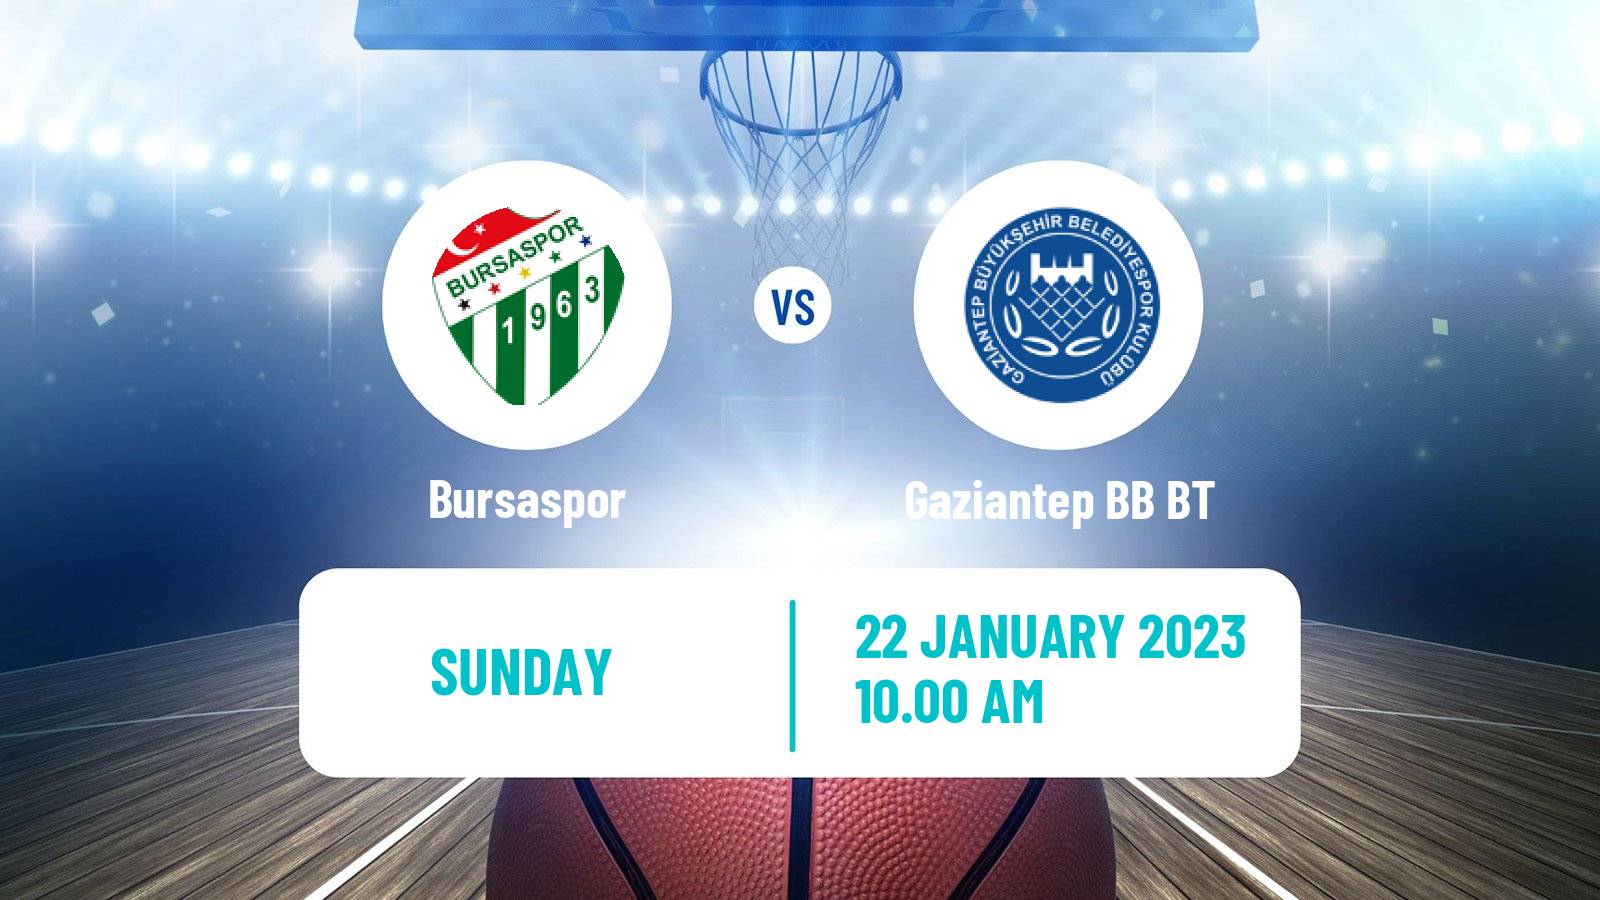 Basketball Turkish Basketball Super Ligi Bursaspor - Gaziantep BB BT